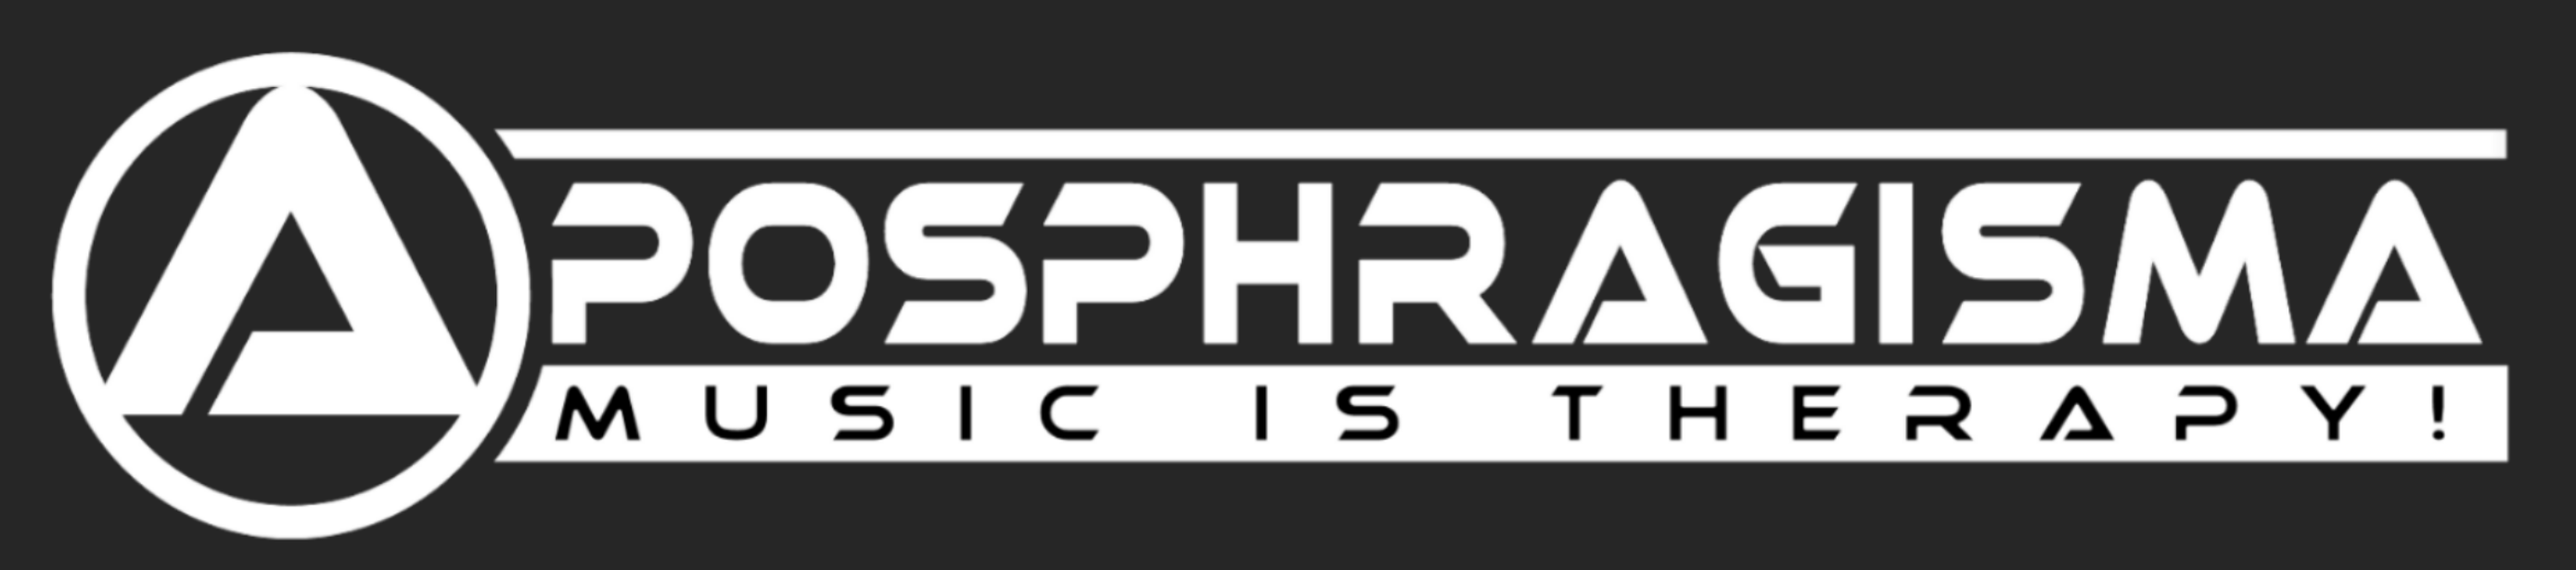 Aposphragisma Logo